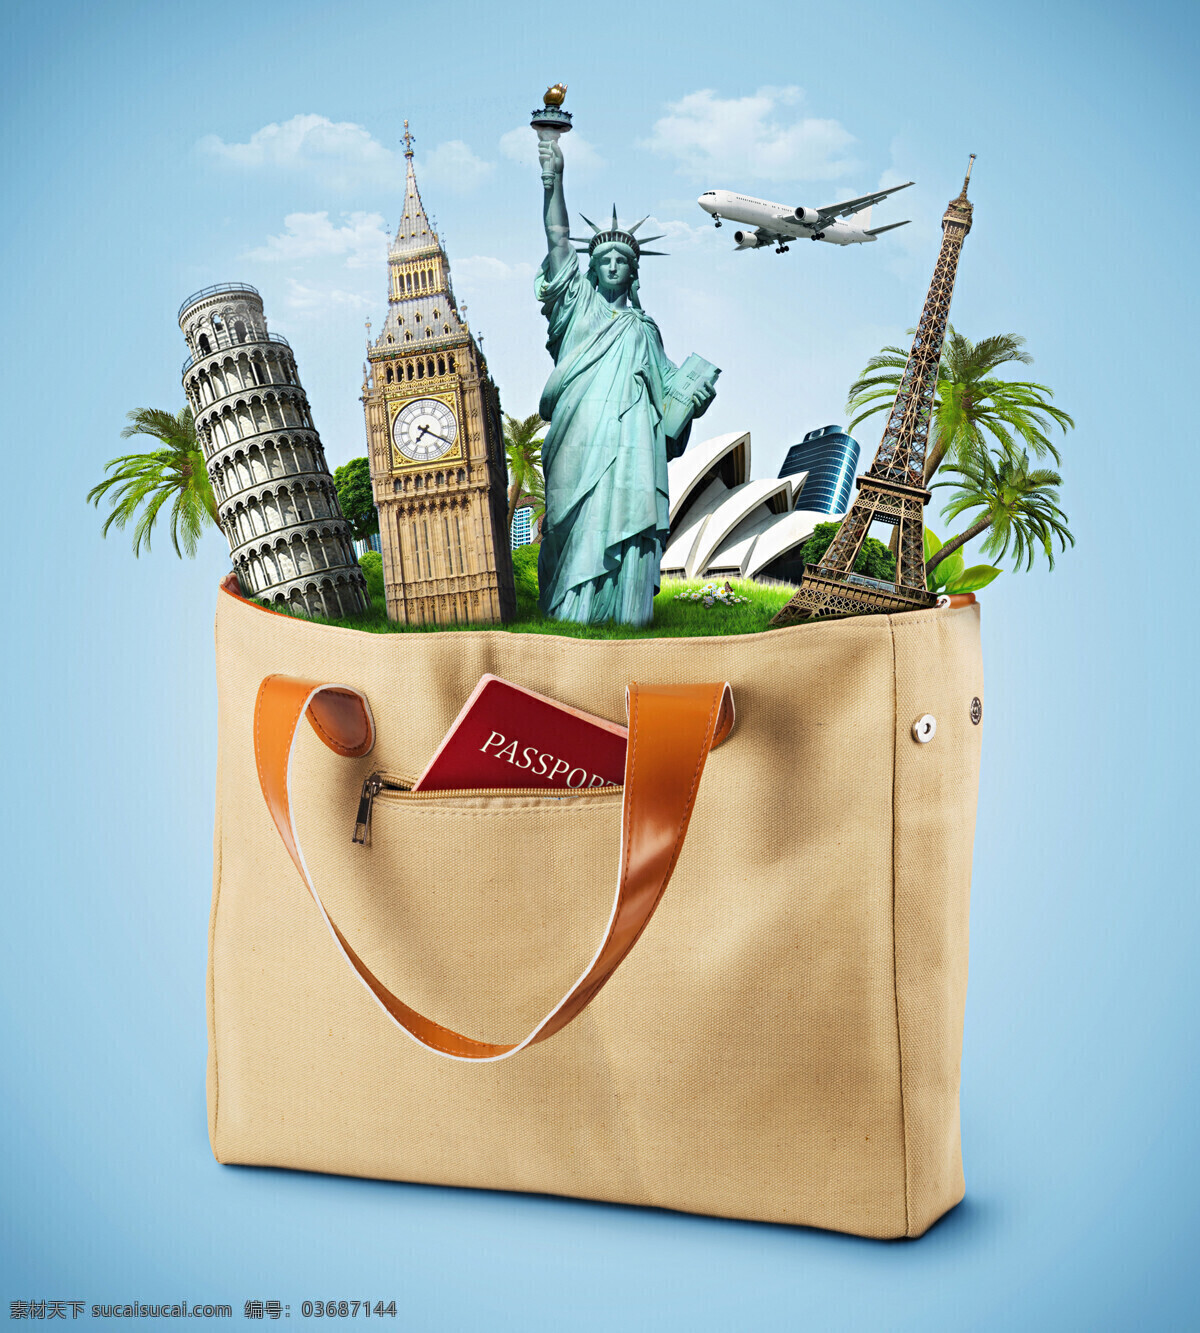 袋子 里 旅游名胜 手提袋 旅游 飞机 蓝天 白云 椰树 建筑物 其他类别 生活百科